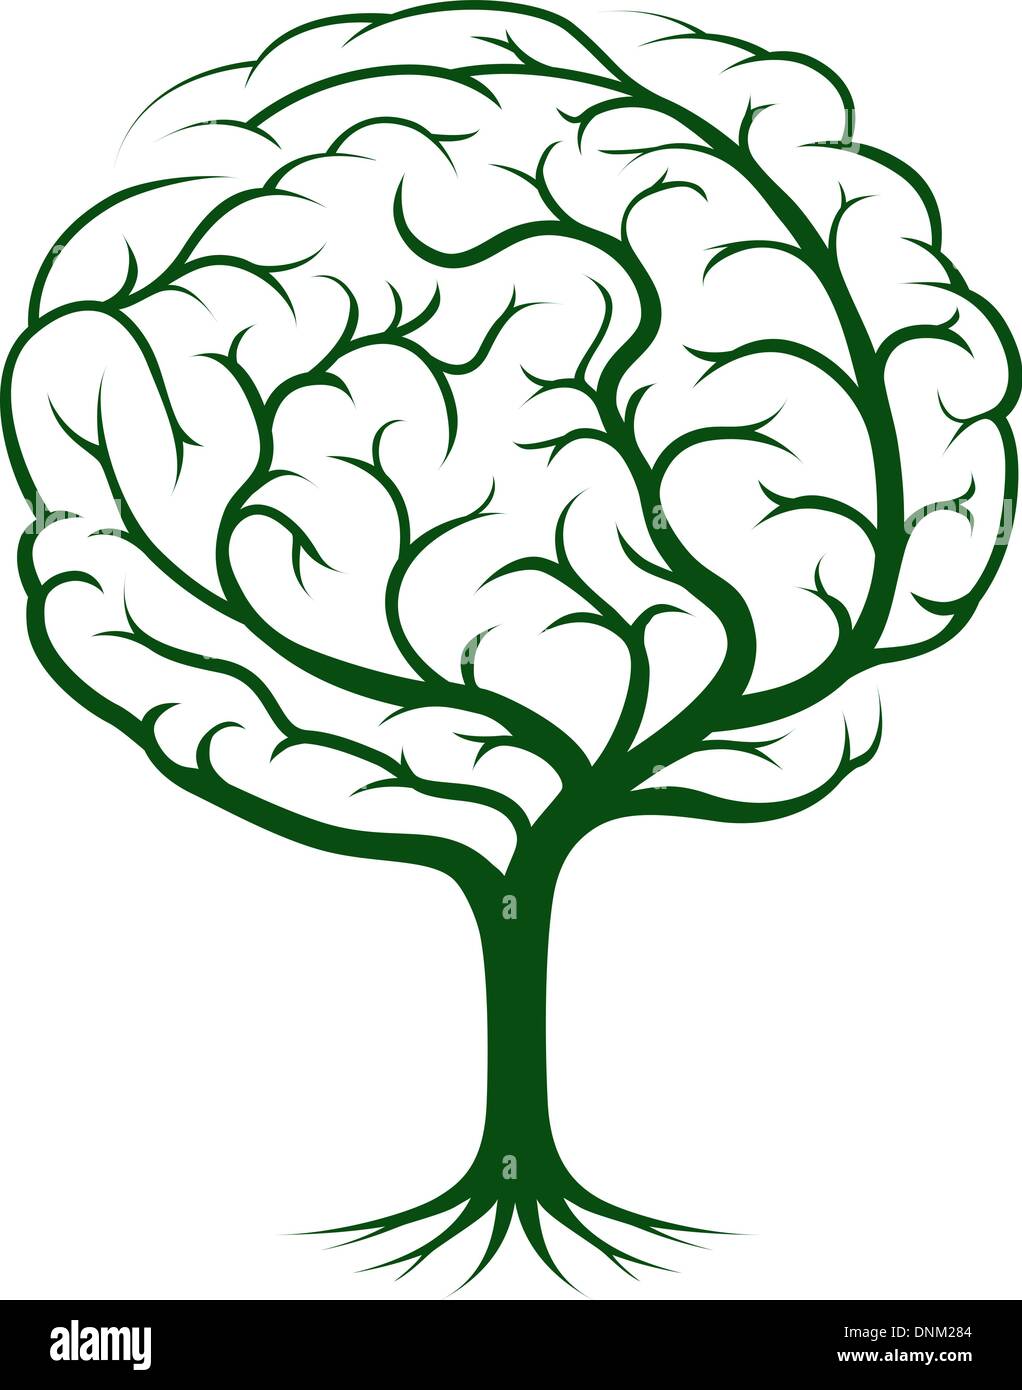 Illustration de l'arbre du cerveau, arbre de la connaissance, médical, environnemental ou concept psychologique Illustration de Vecteur